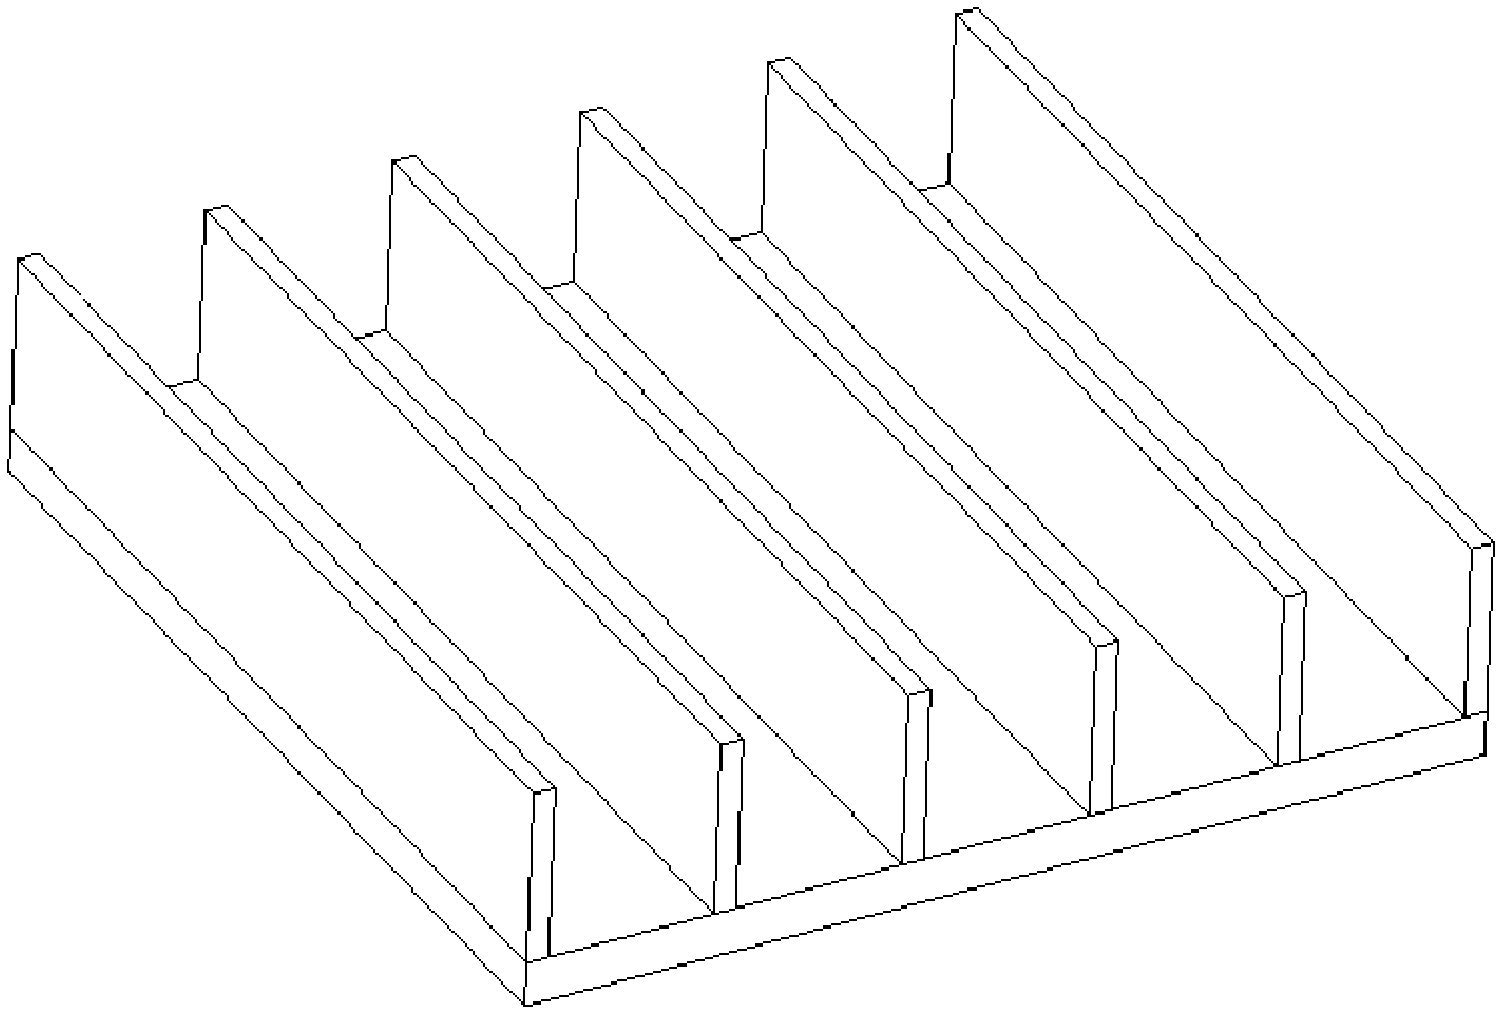 Optimum design method of heat sink based on Taguchi method